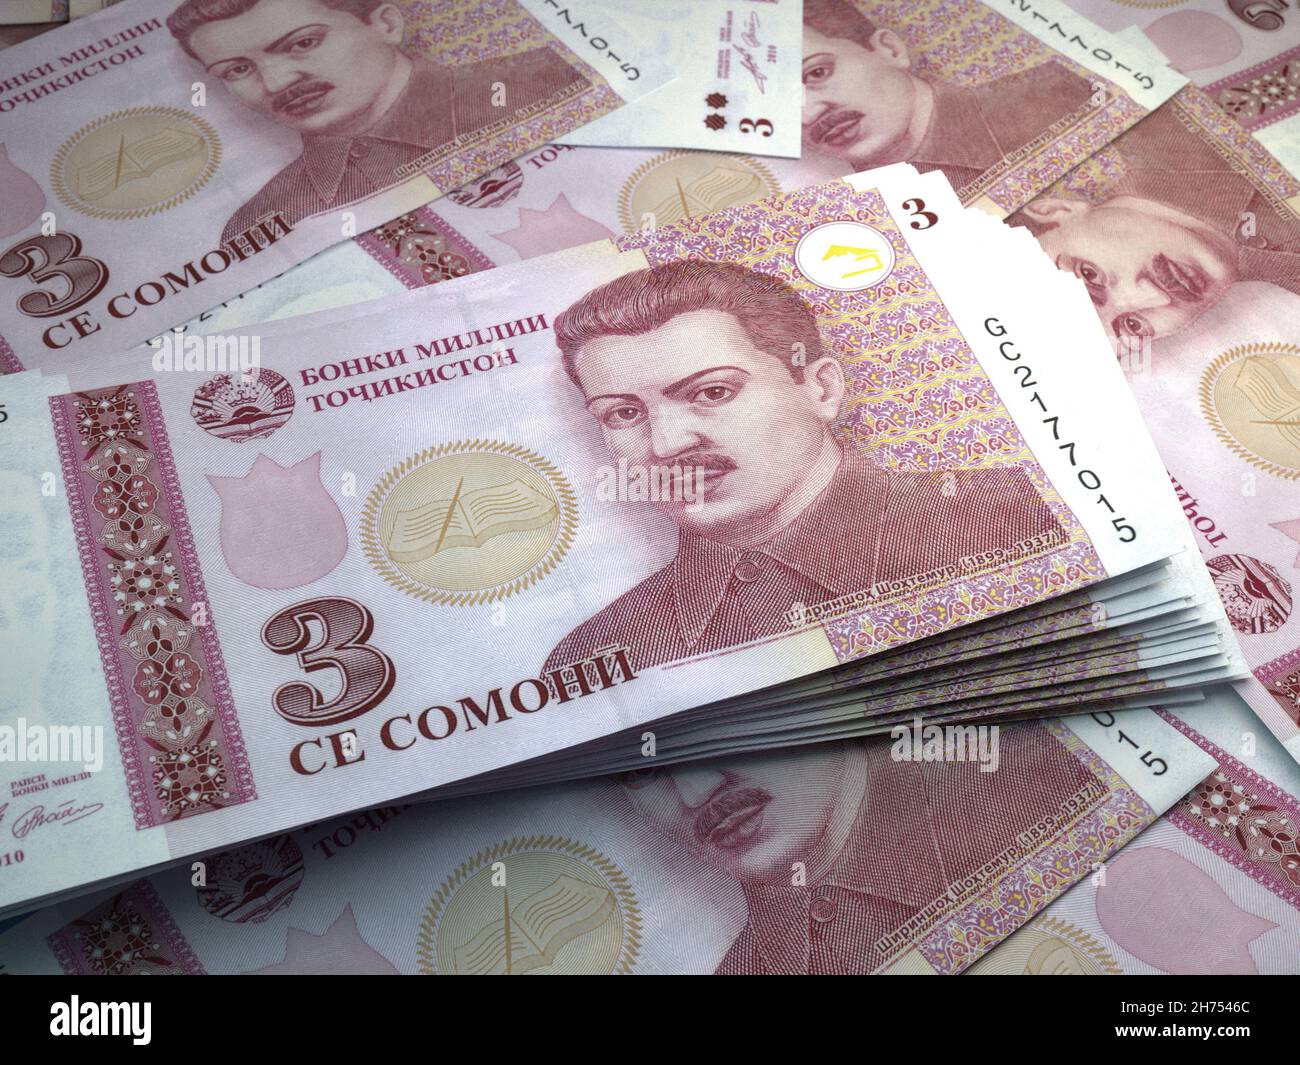 Таджикистан деньги в рублях